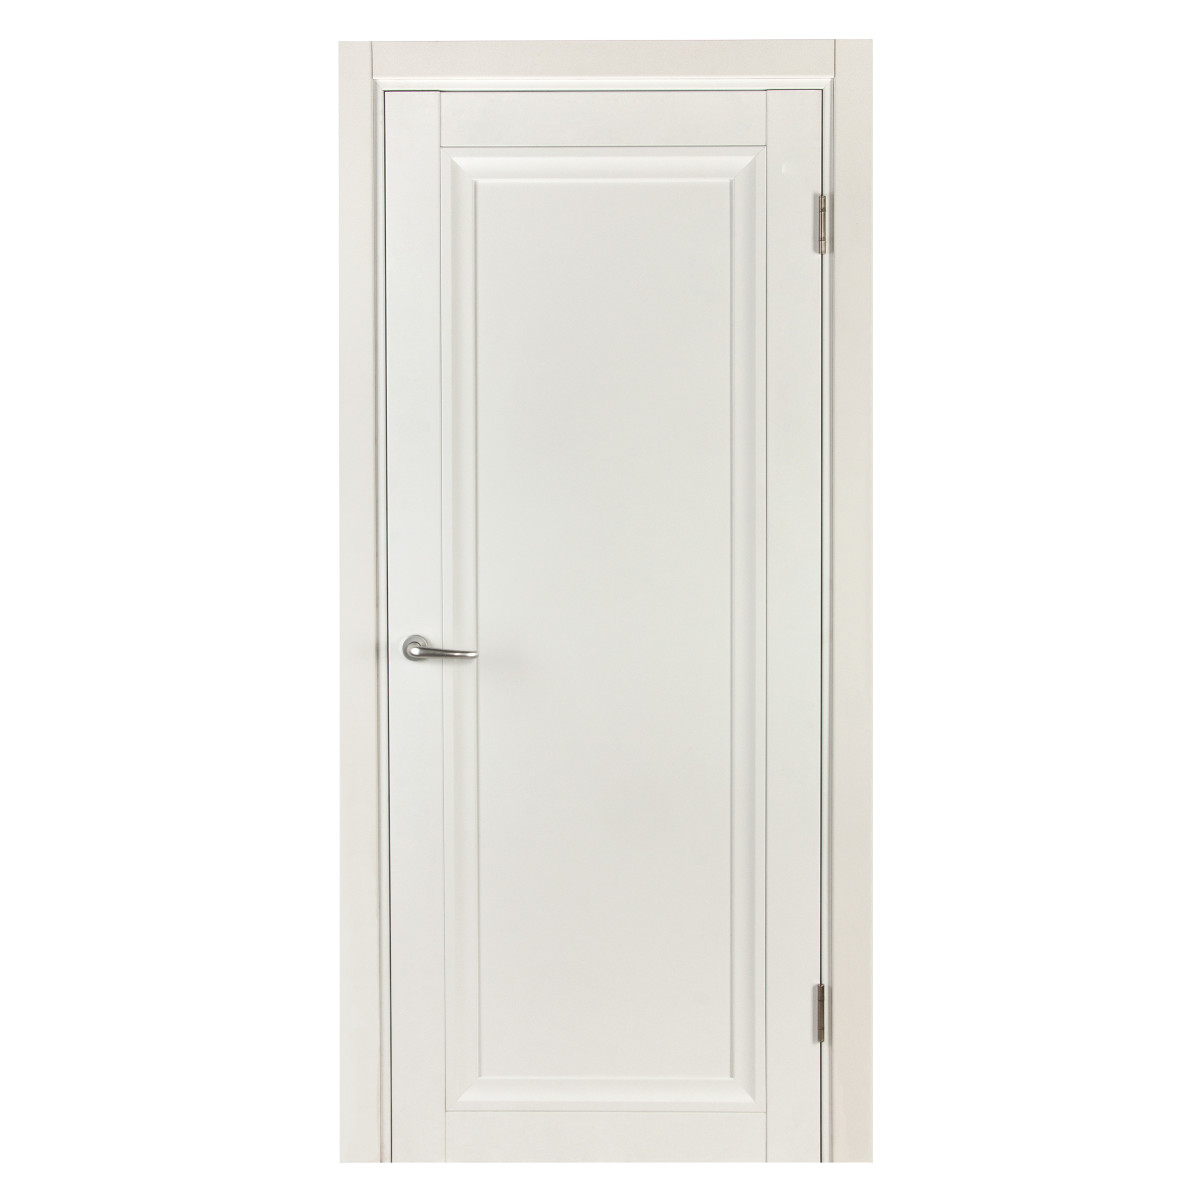 Дверь межкомнатная Нобиле 70х200 см, цвет цвет белый, с замком